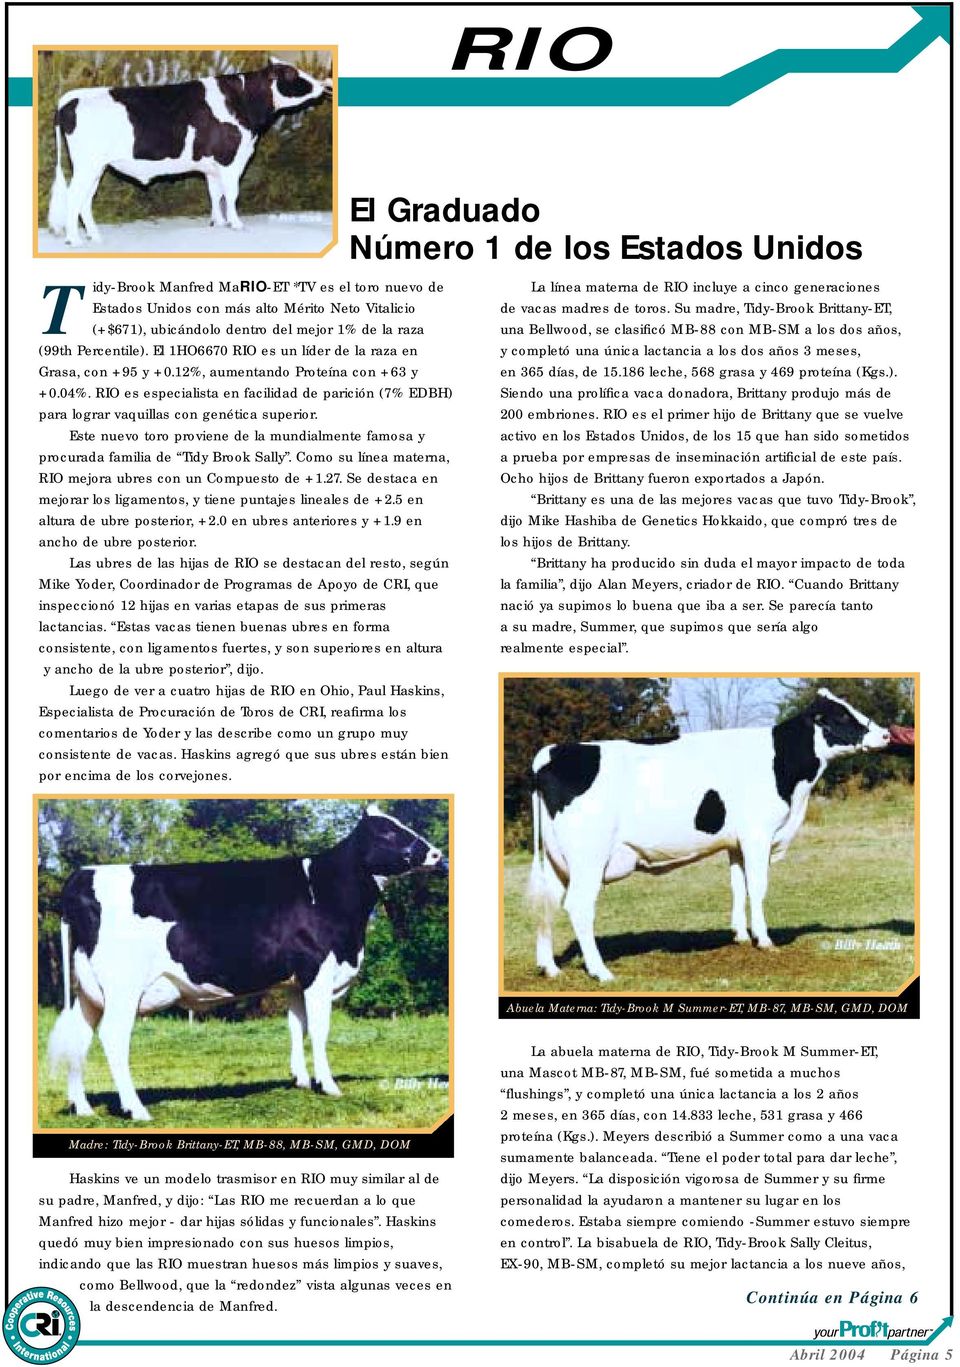 RIO es especialista en facilidad de parición (7% EDBH) para lograr vaquillas con genética superior. Este nuevo toro proviene de la mundialmente famosa y procurada familia de Tidy Brook Sally.